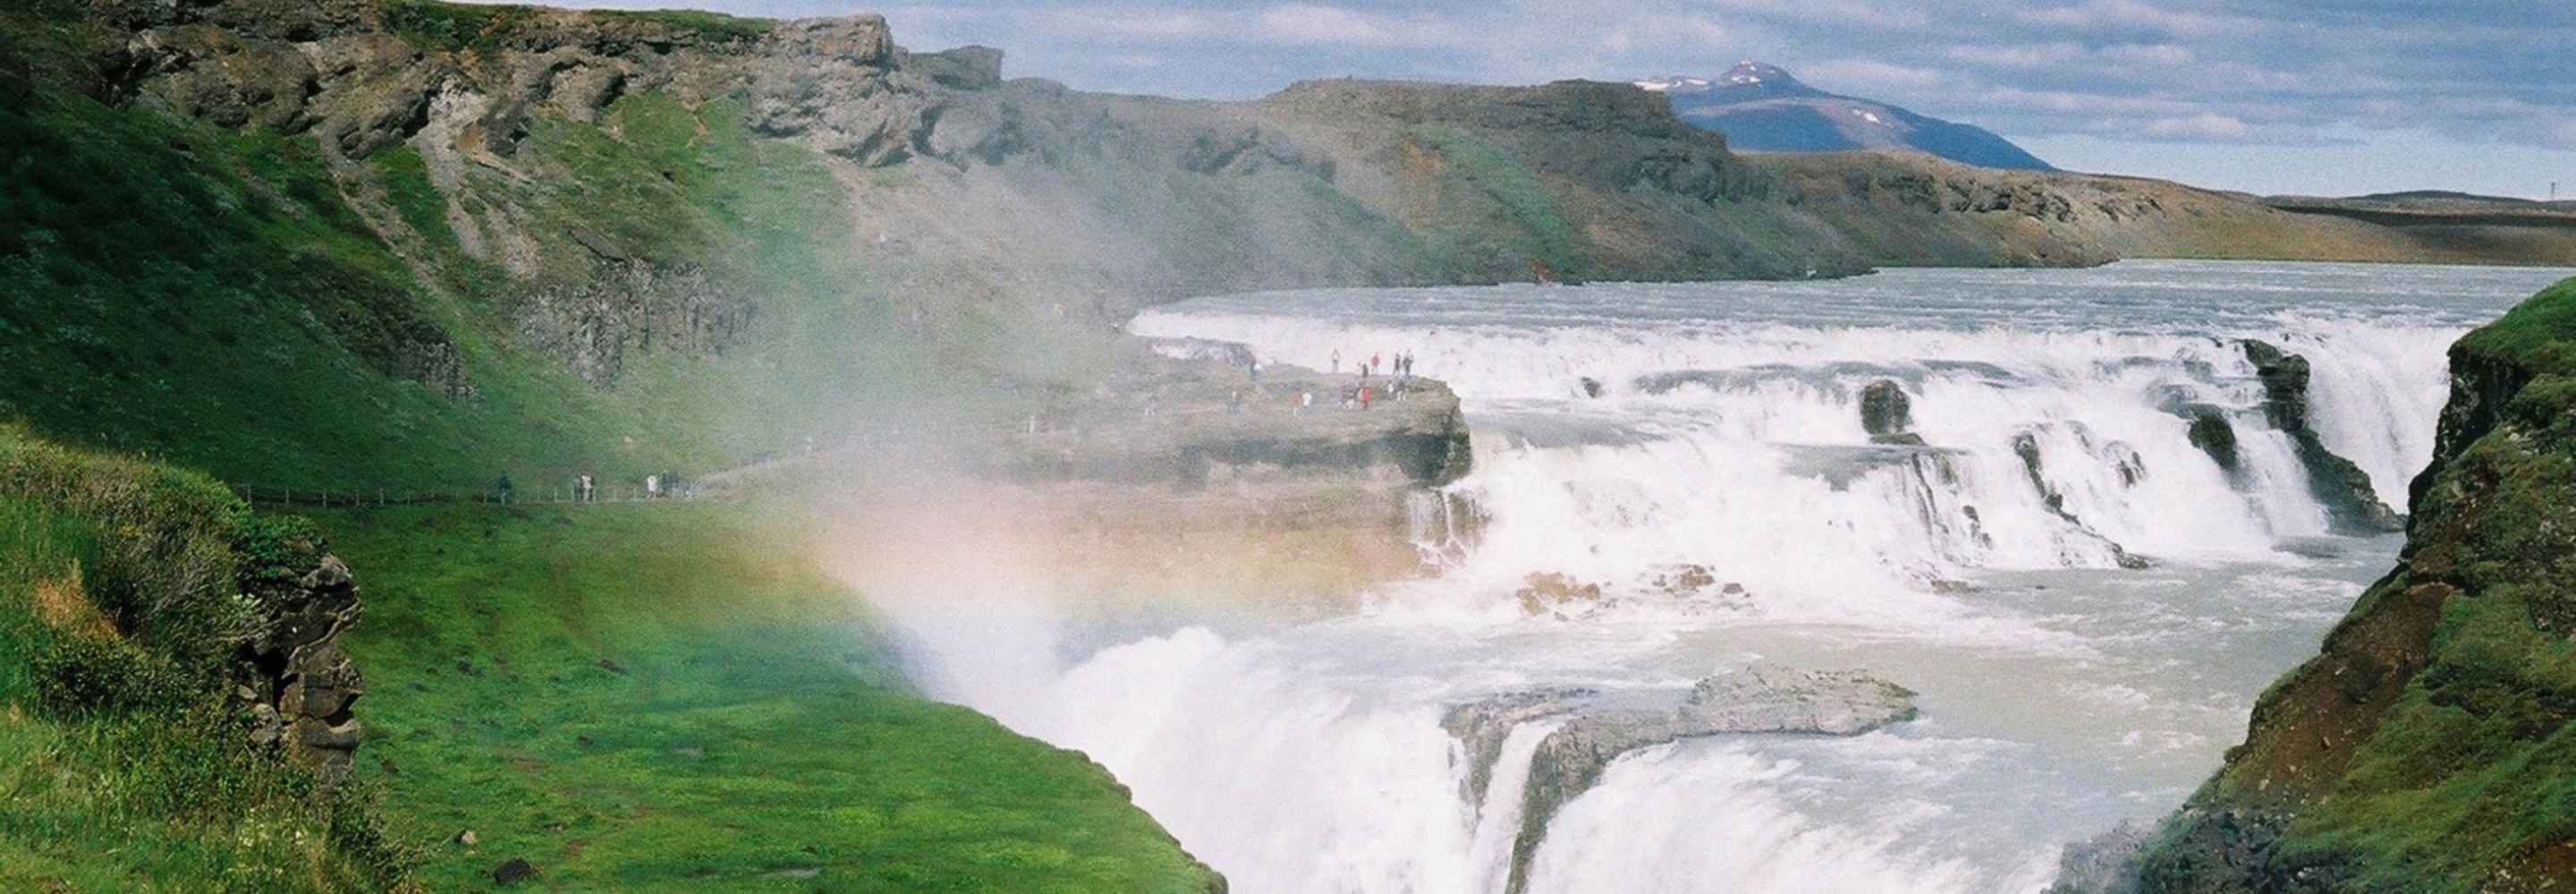 Blick auf Wasserfälle bei Reykjavik (Island), Teil der Mein Schiff Island Kreuzfahrt